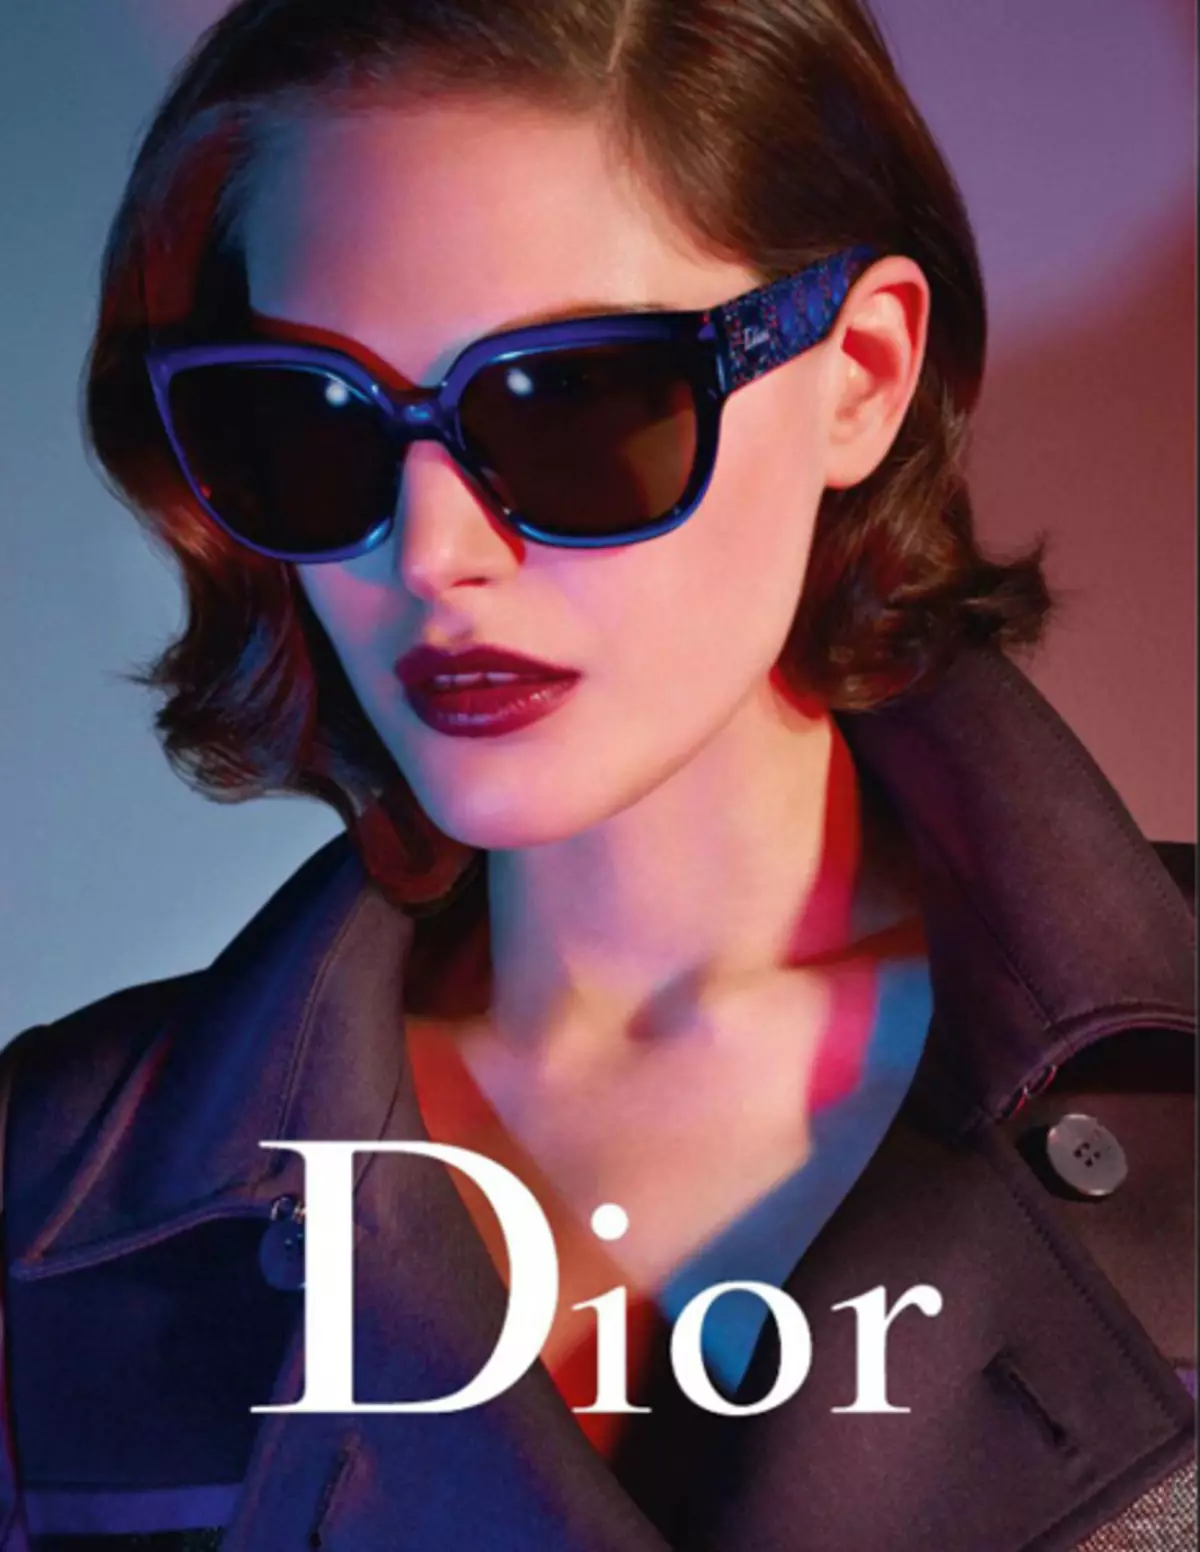 Dior Sunlasses (58 ခု) - ကျော်ကြားသောအမှတ်တံဆိပ်မှနေကာမျက်မှန်မှနေကာမျက်မှန် 15181_56